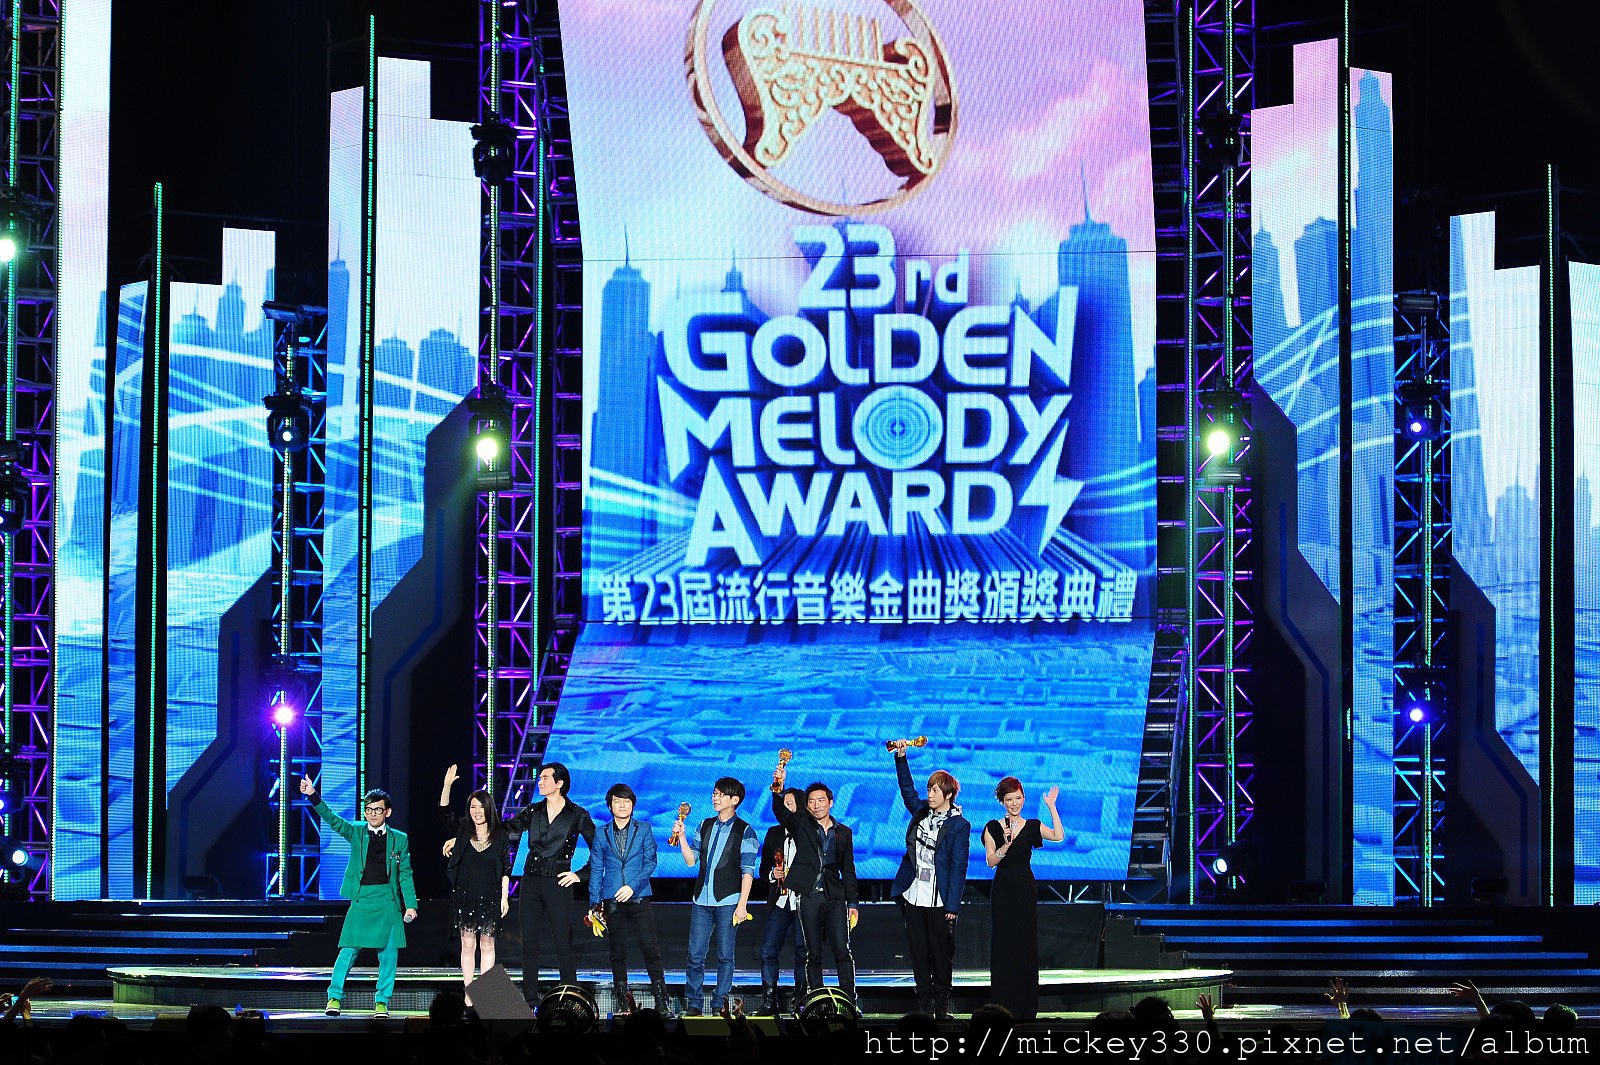 2012 623金曲獎~美麗圖片由台視公關處提供!感謝攝影大哥! (8)